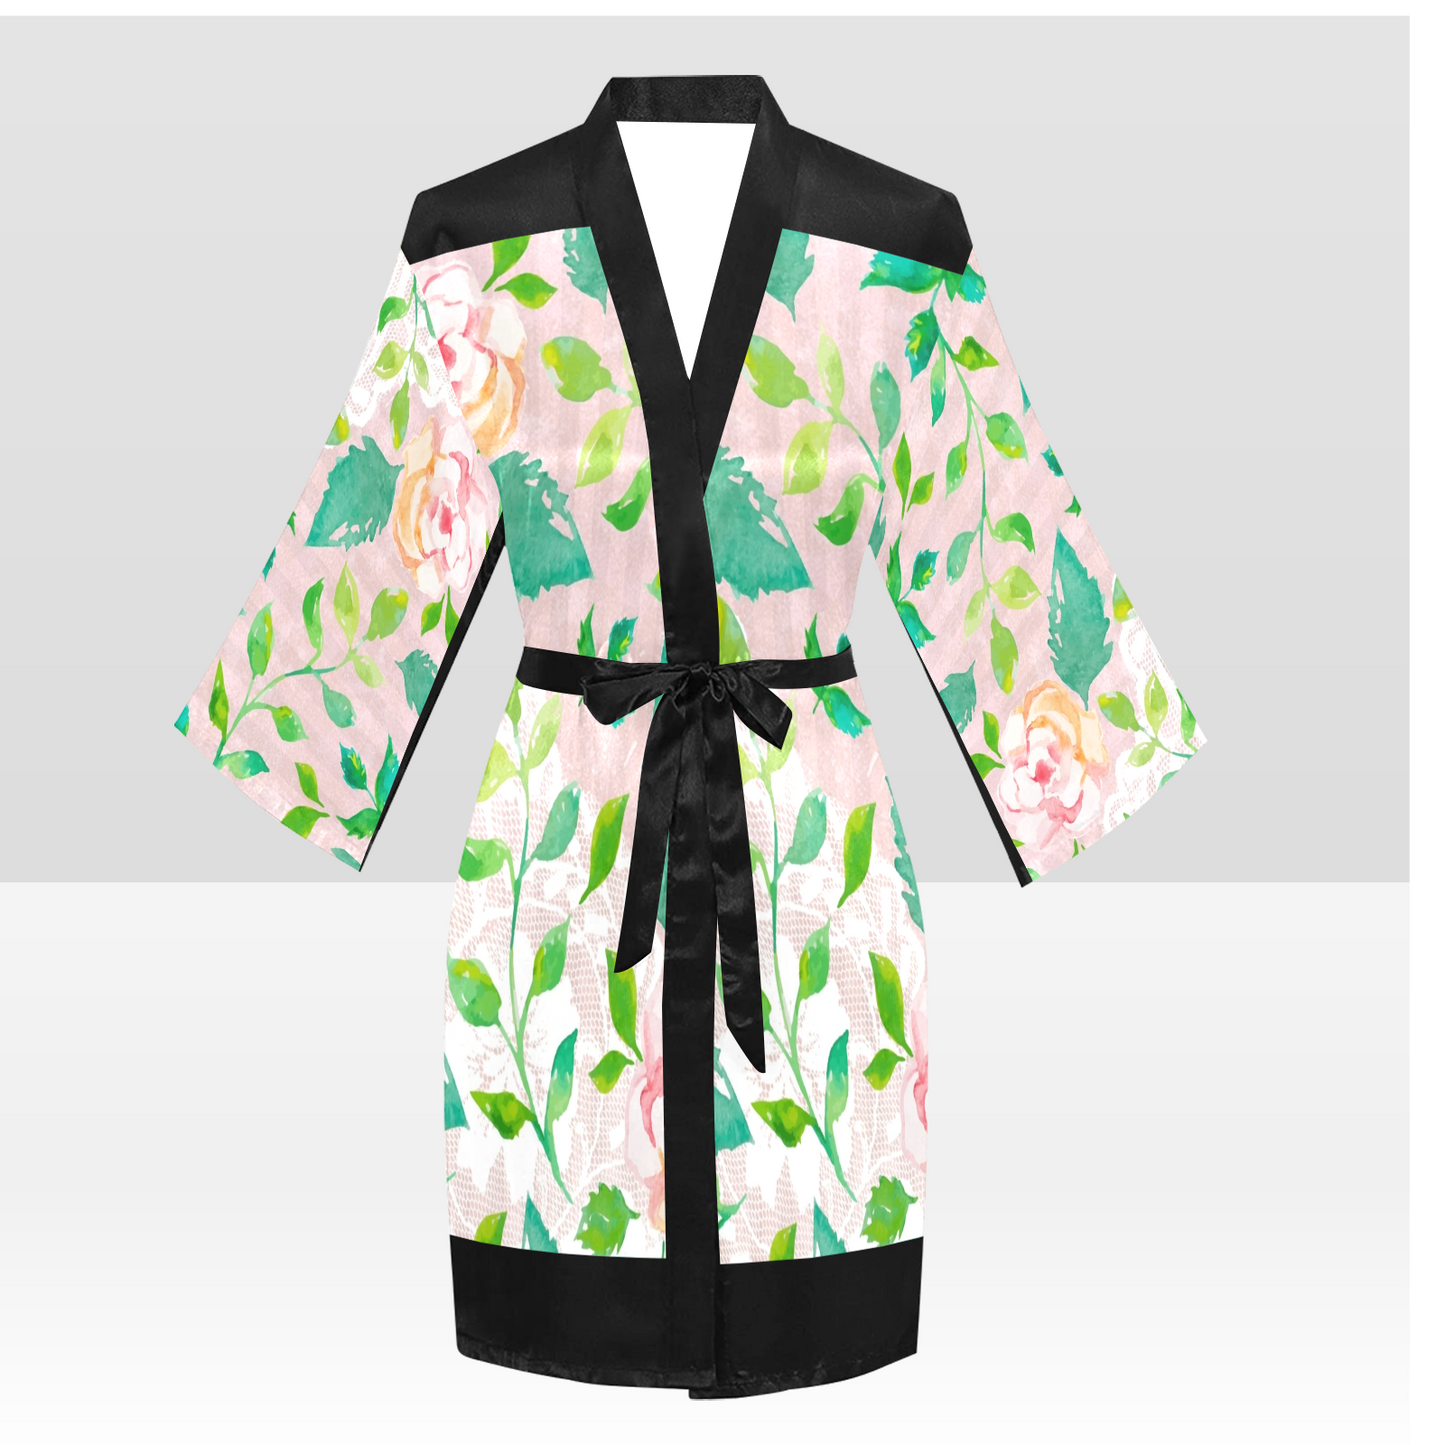 Victorian Lace Kimono Robe, Black or White Trim, Sizes XS to 2XL, Design 21